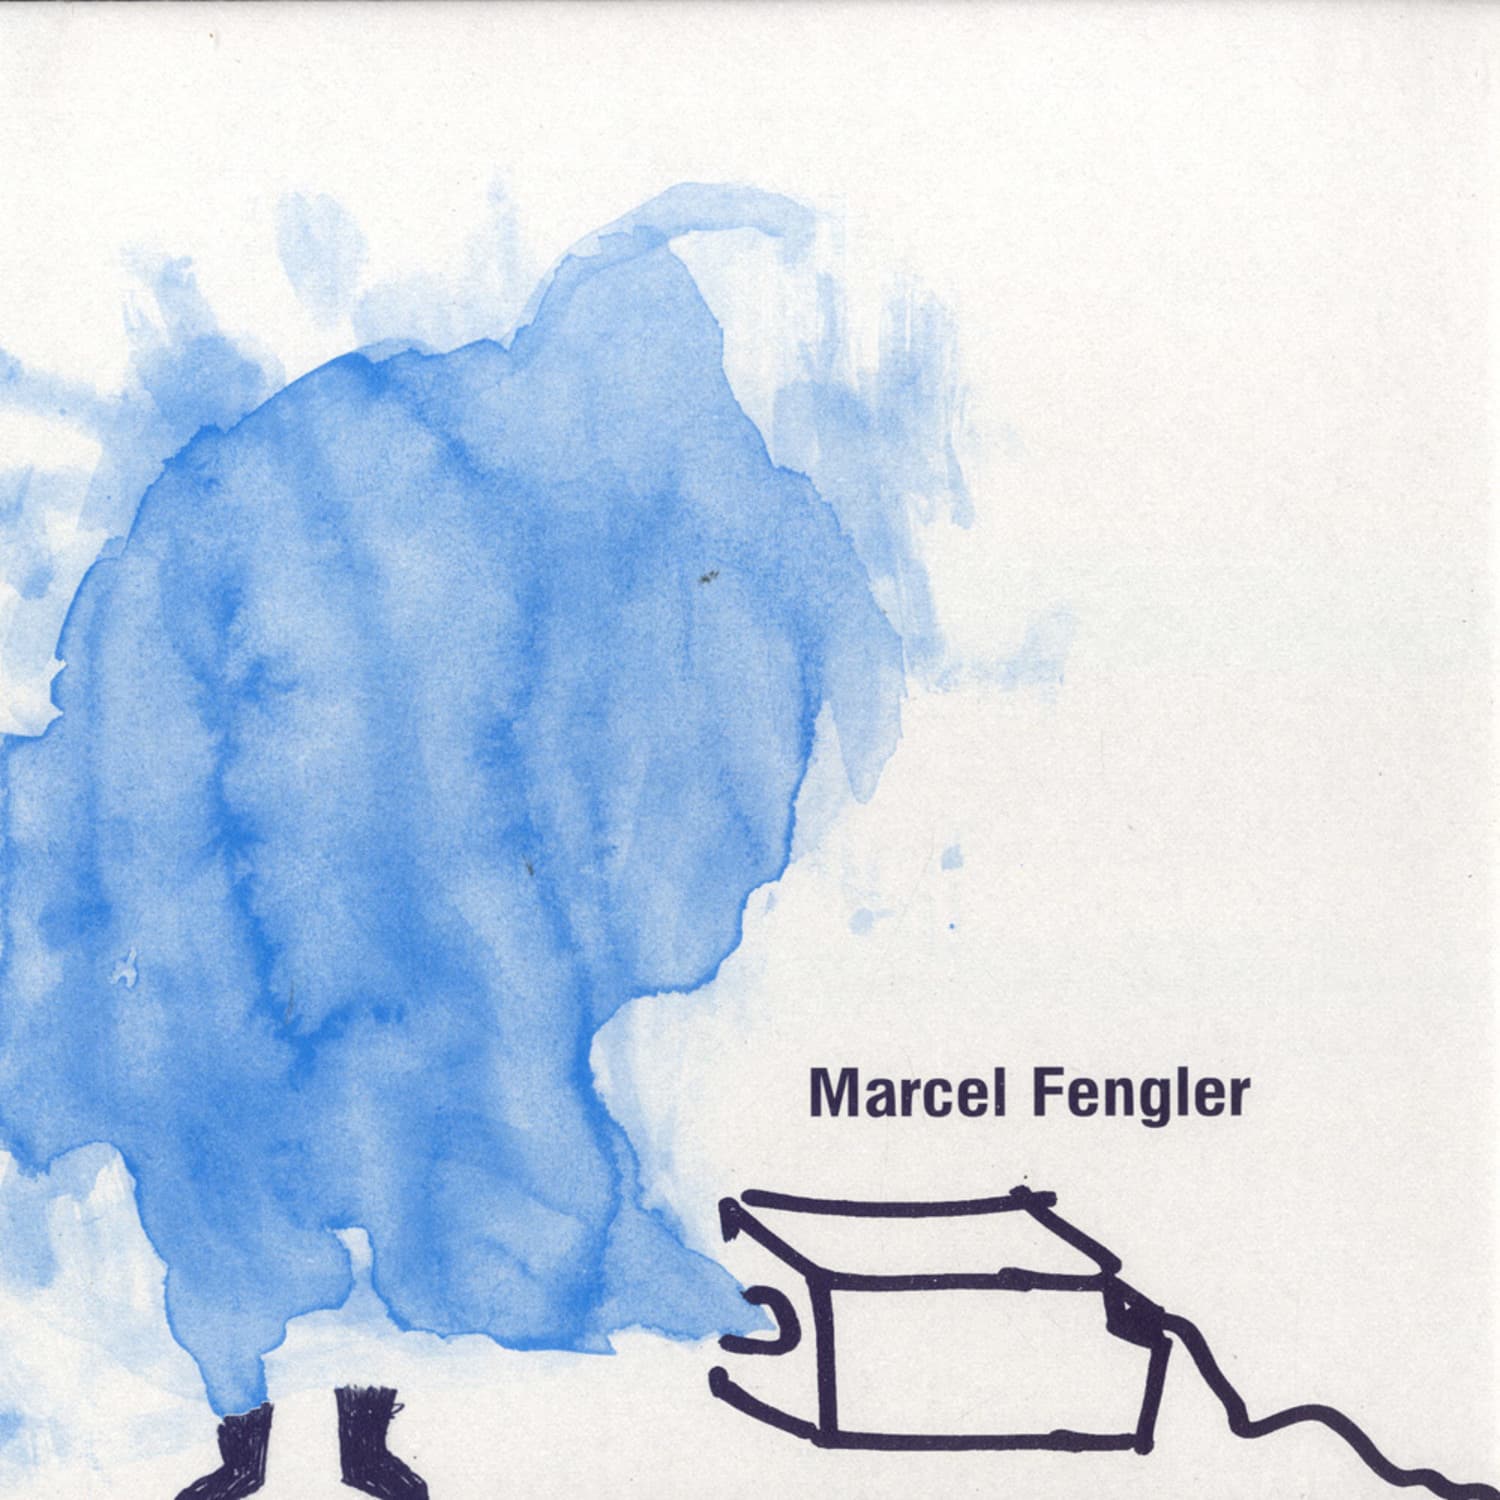 Marcel Fengler - FRICTION / YAKI